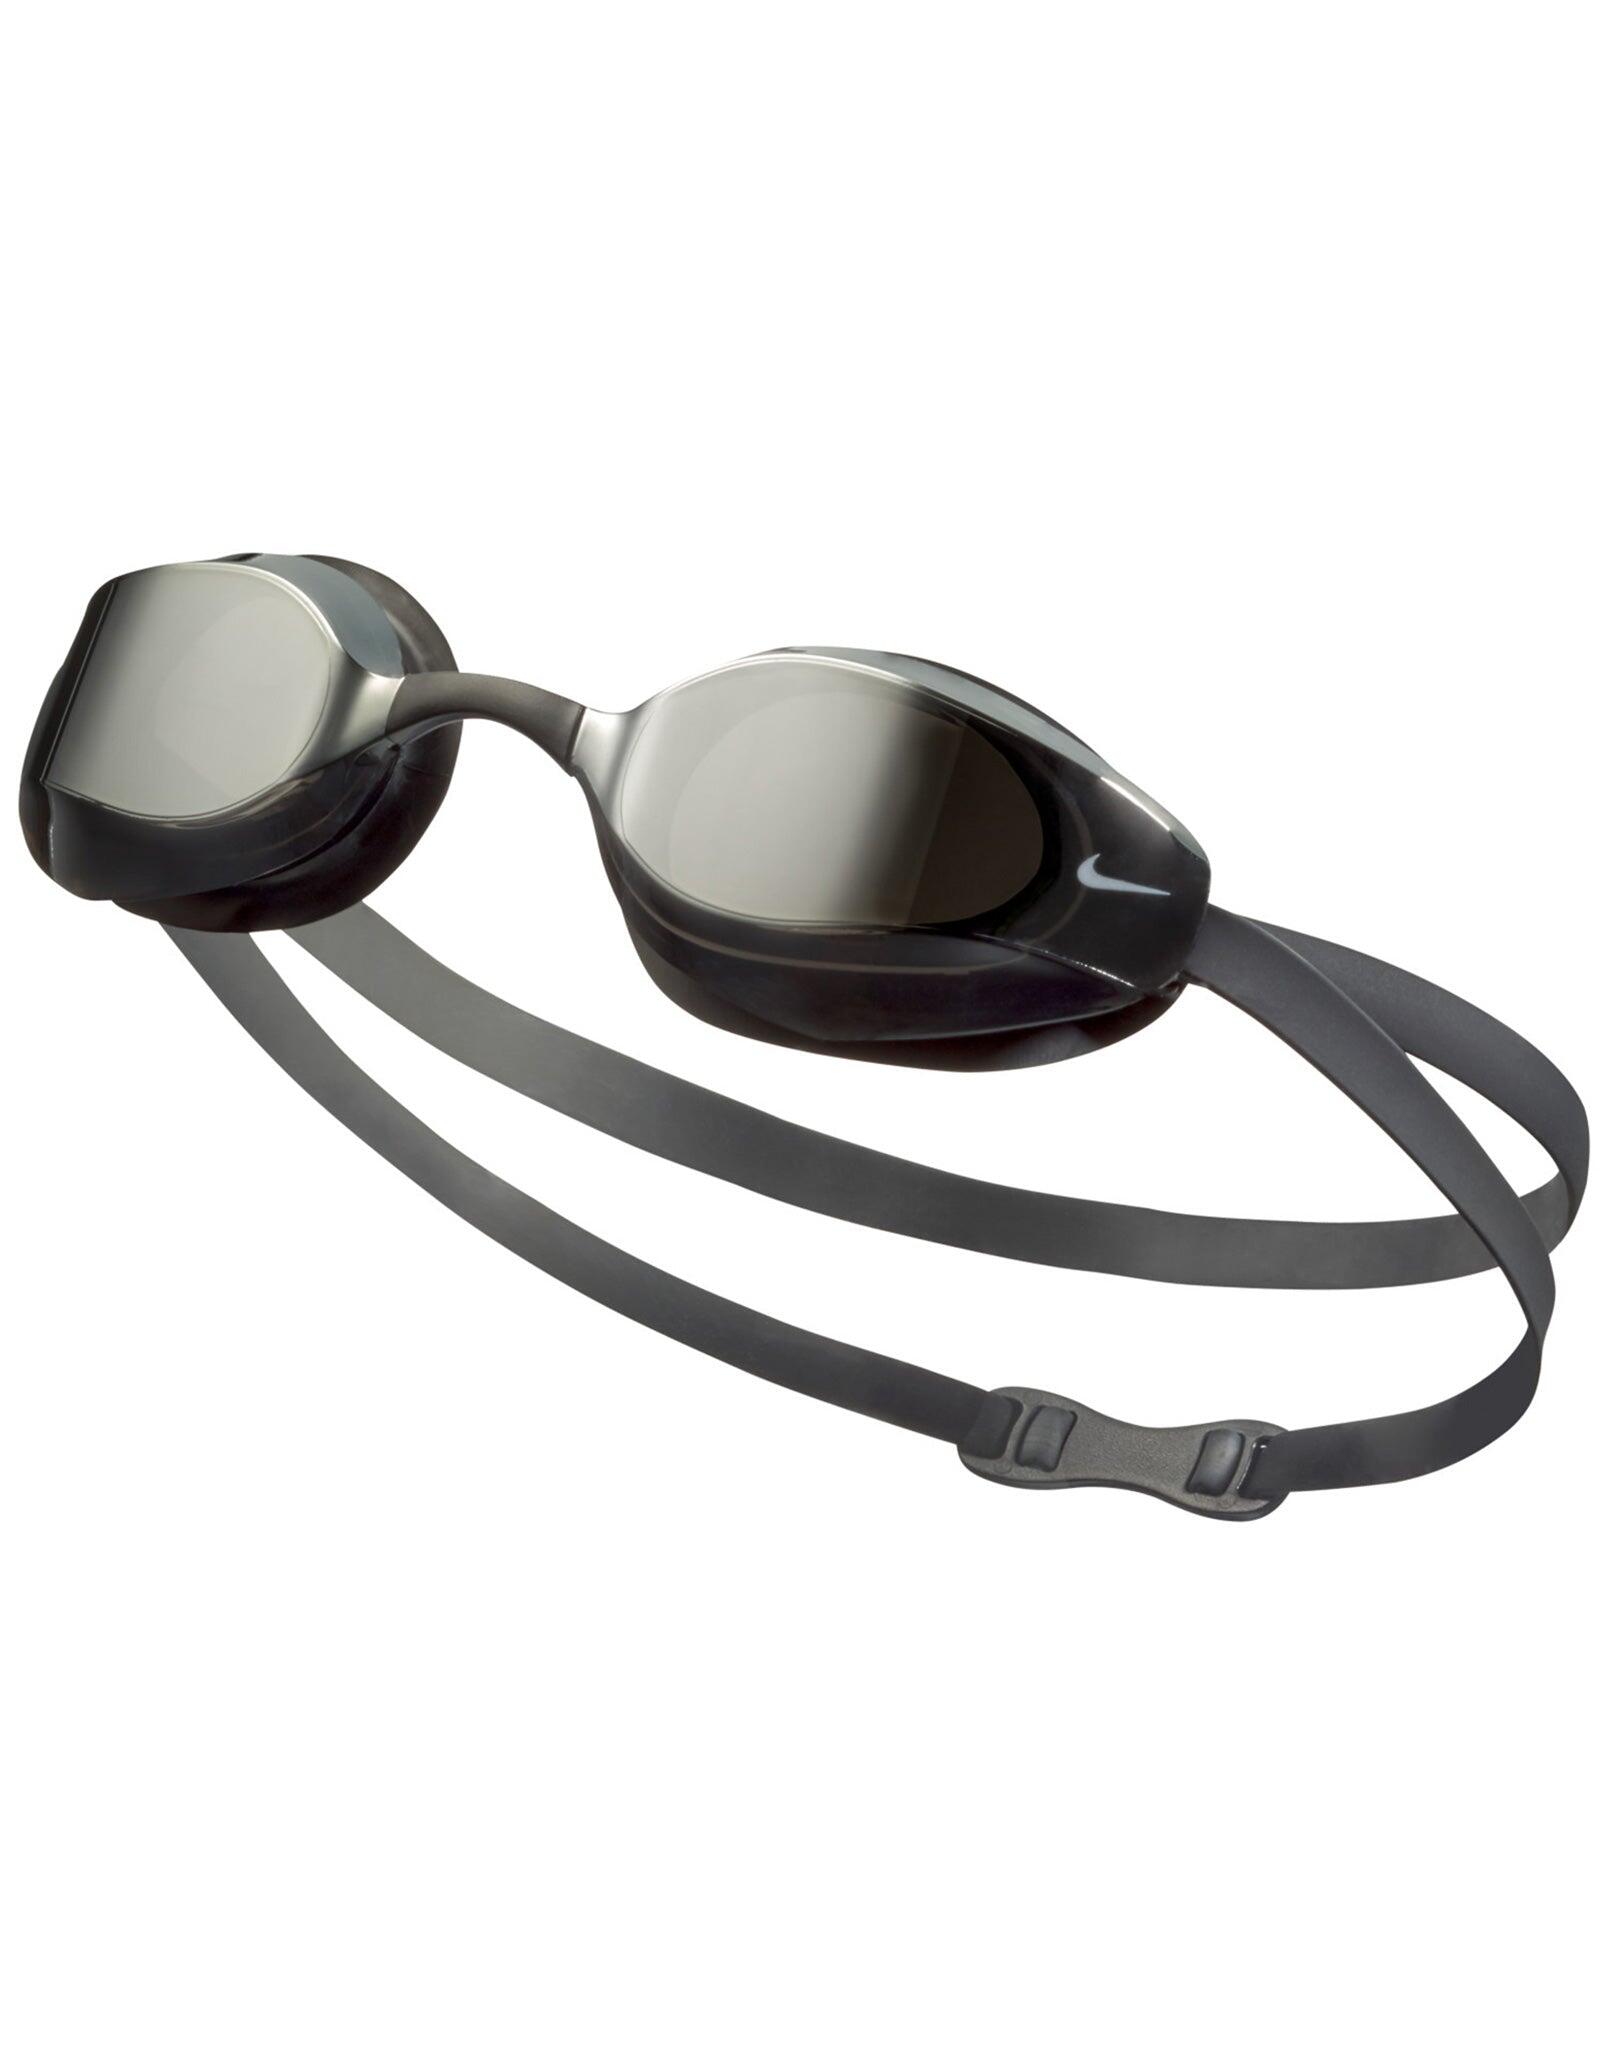 Swim vapor mirror goggle men's swimming swimming goggle 3/5